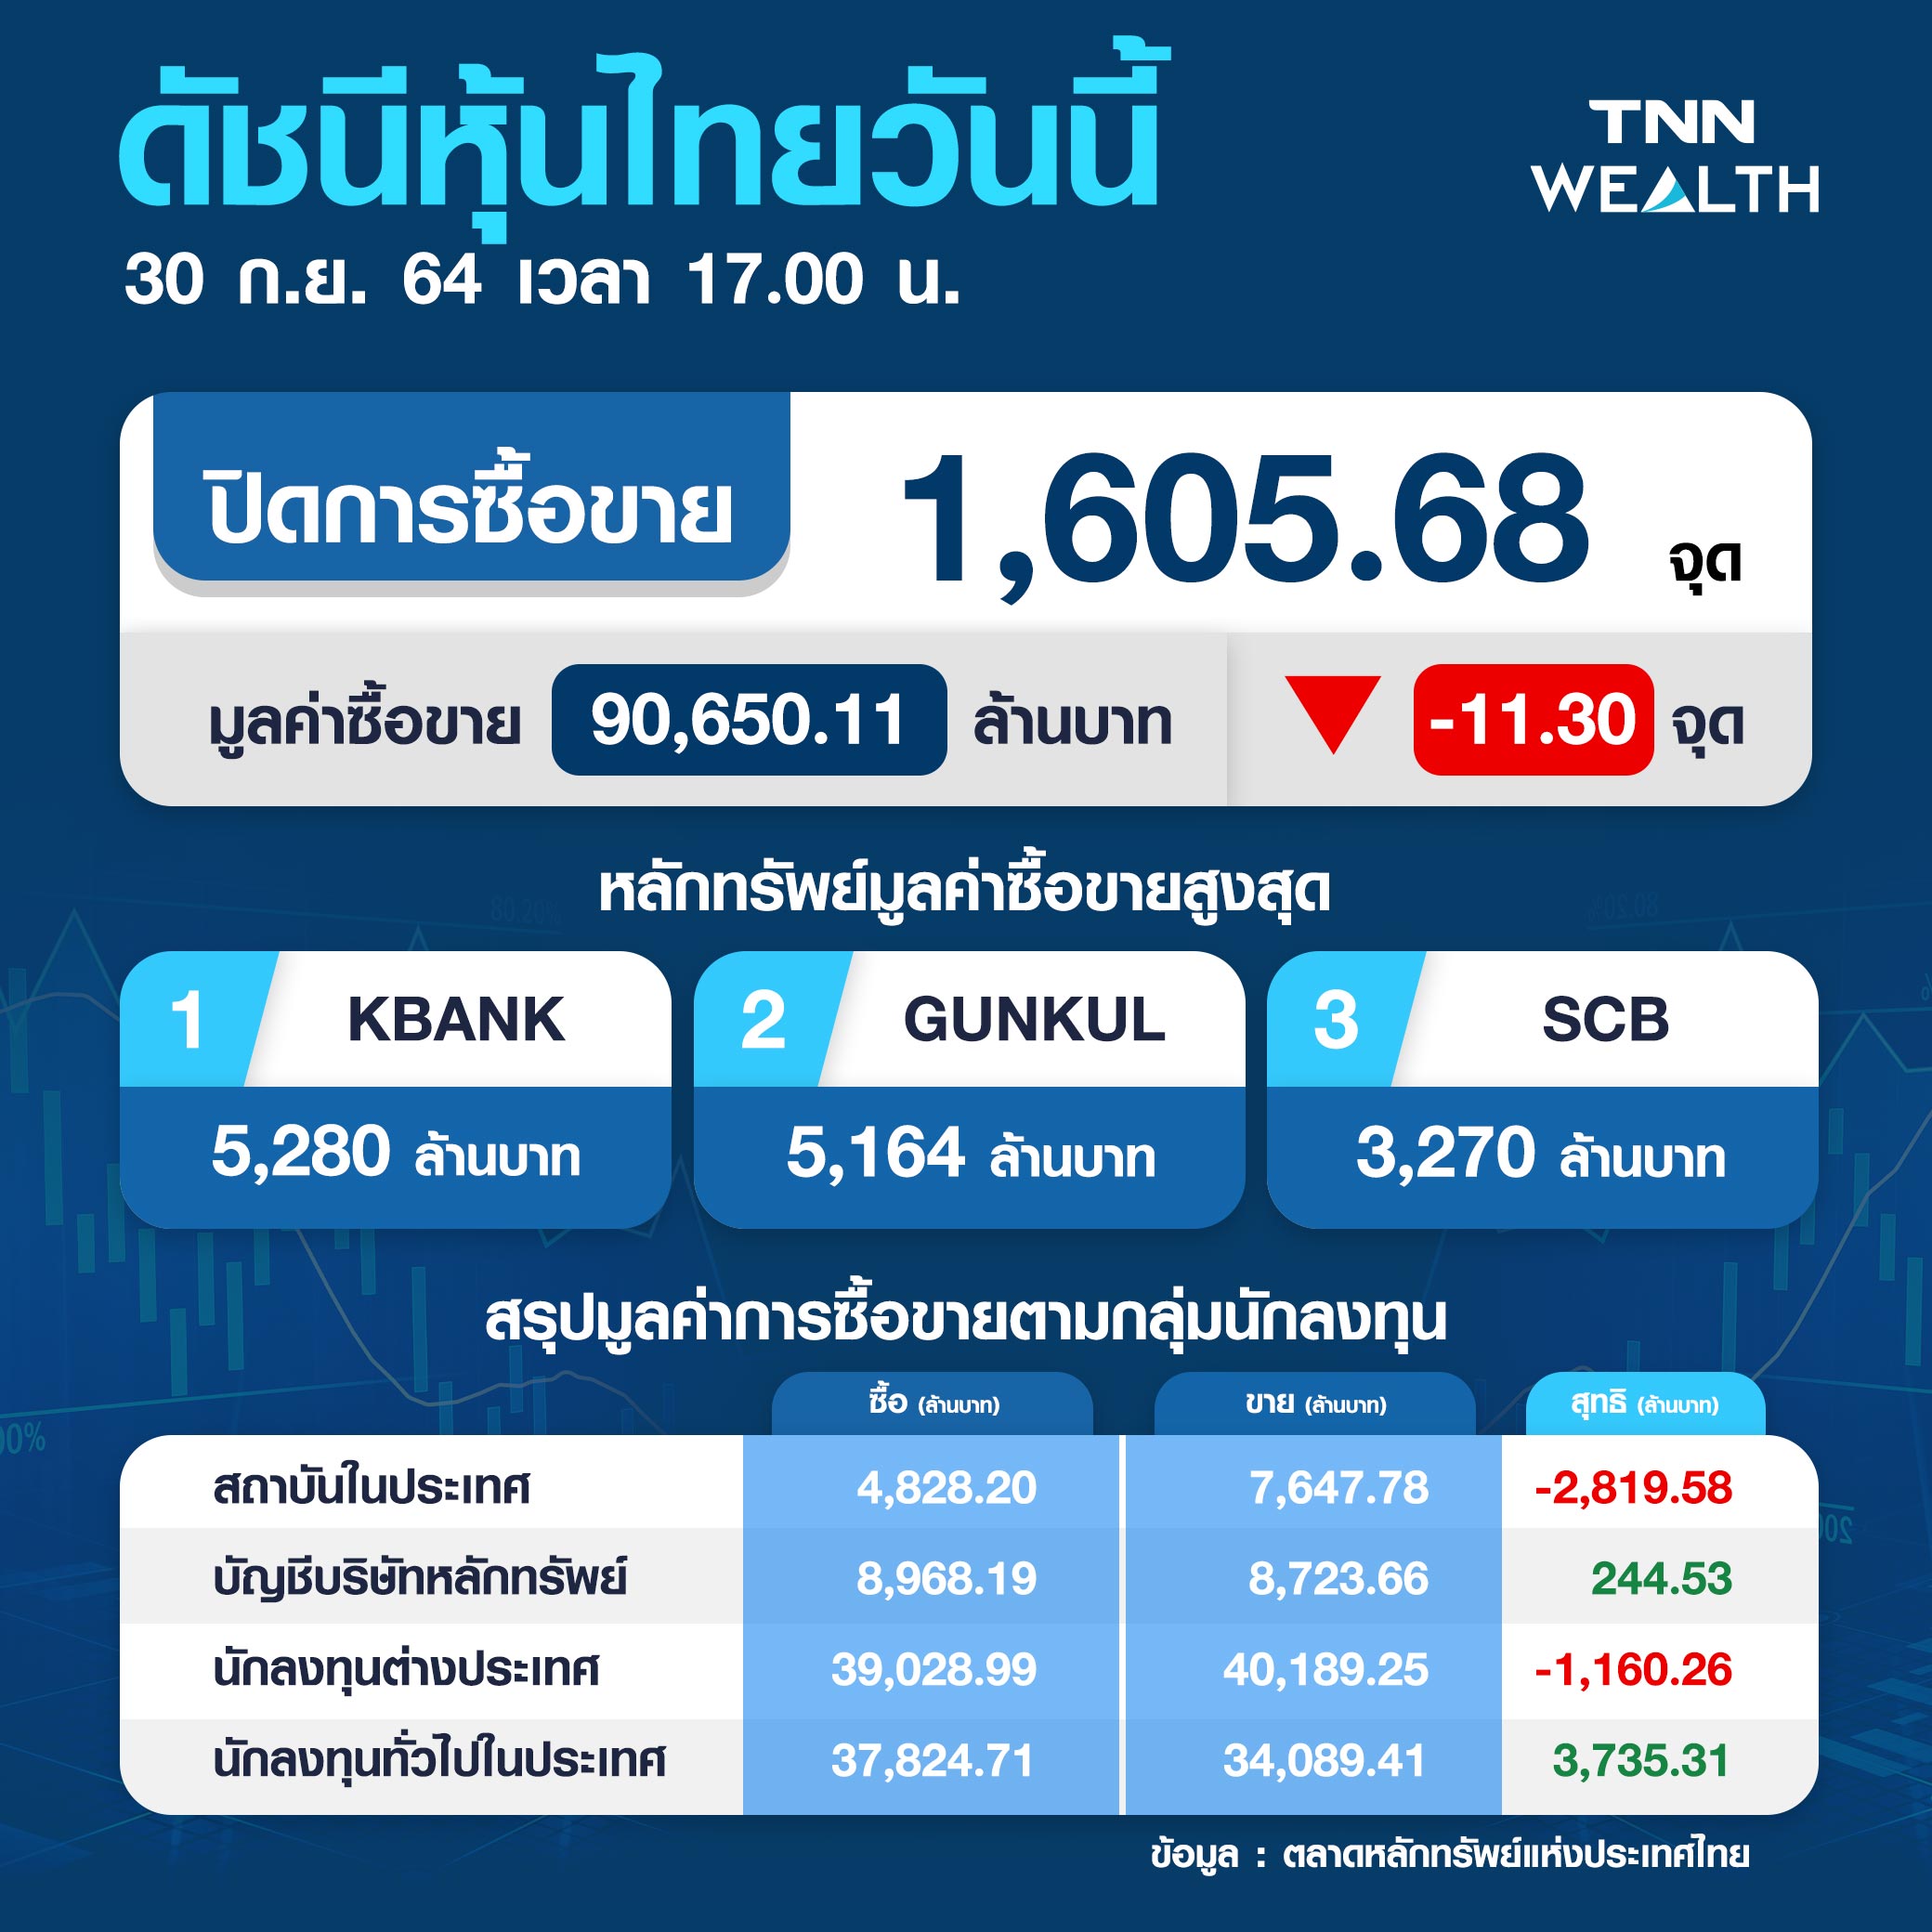 หุ้นไทยปิดร่วง 11.30 จุด จากแรงขายหุ้นกลุ่มแบงก์-พลังงาน-น้ำท่วมกระทบเชิงจิตวิทยา